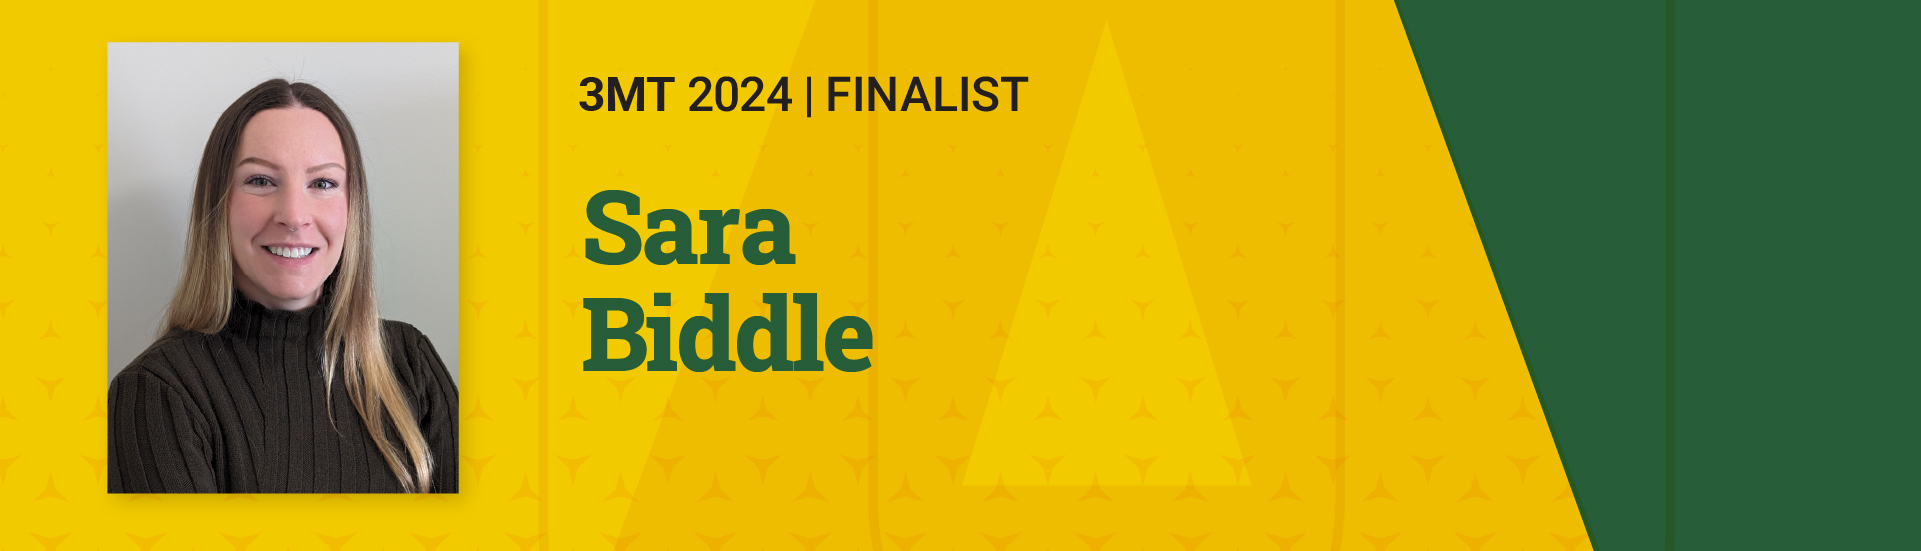 3MT 2024 Finalist Sara Biddle